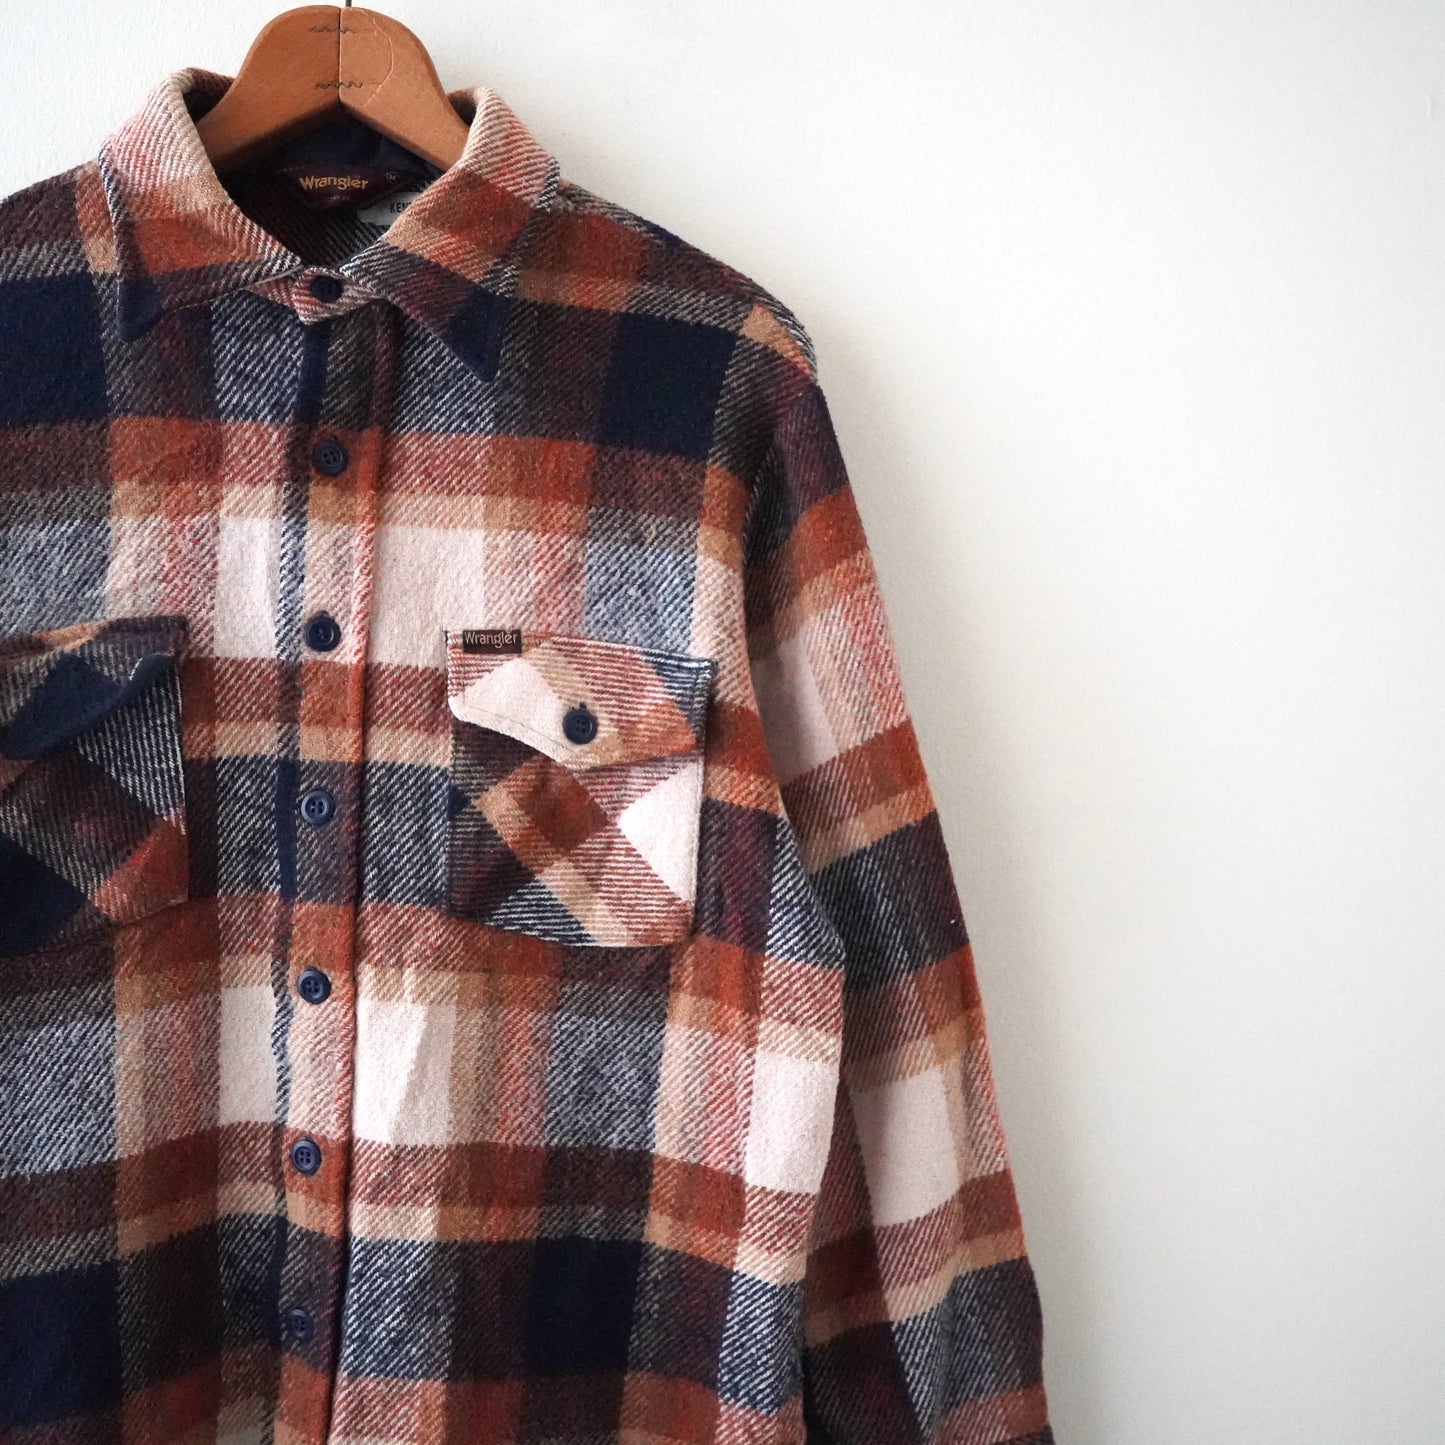 Wrangler flannel shirt